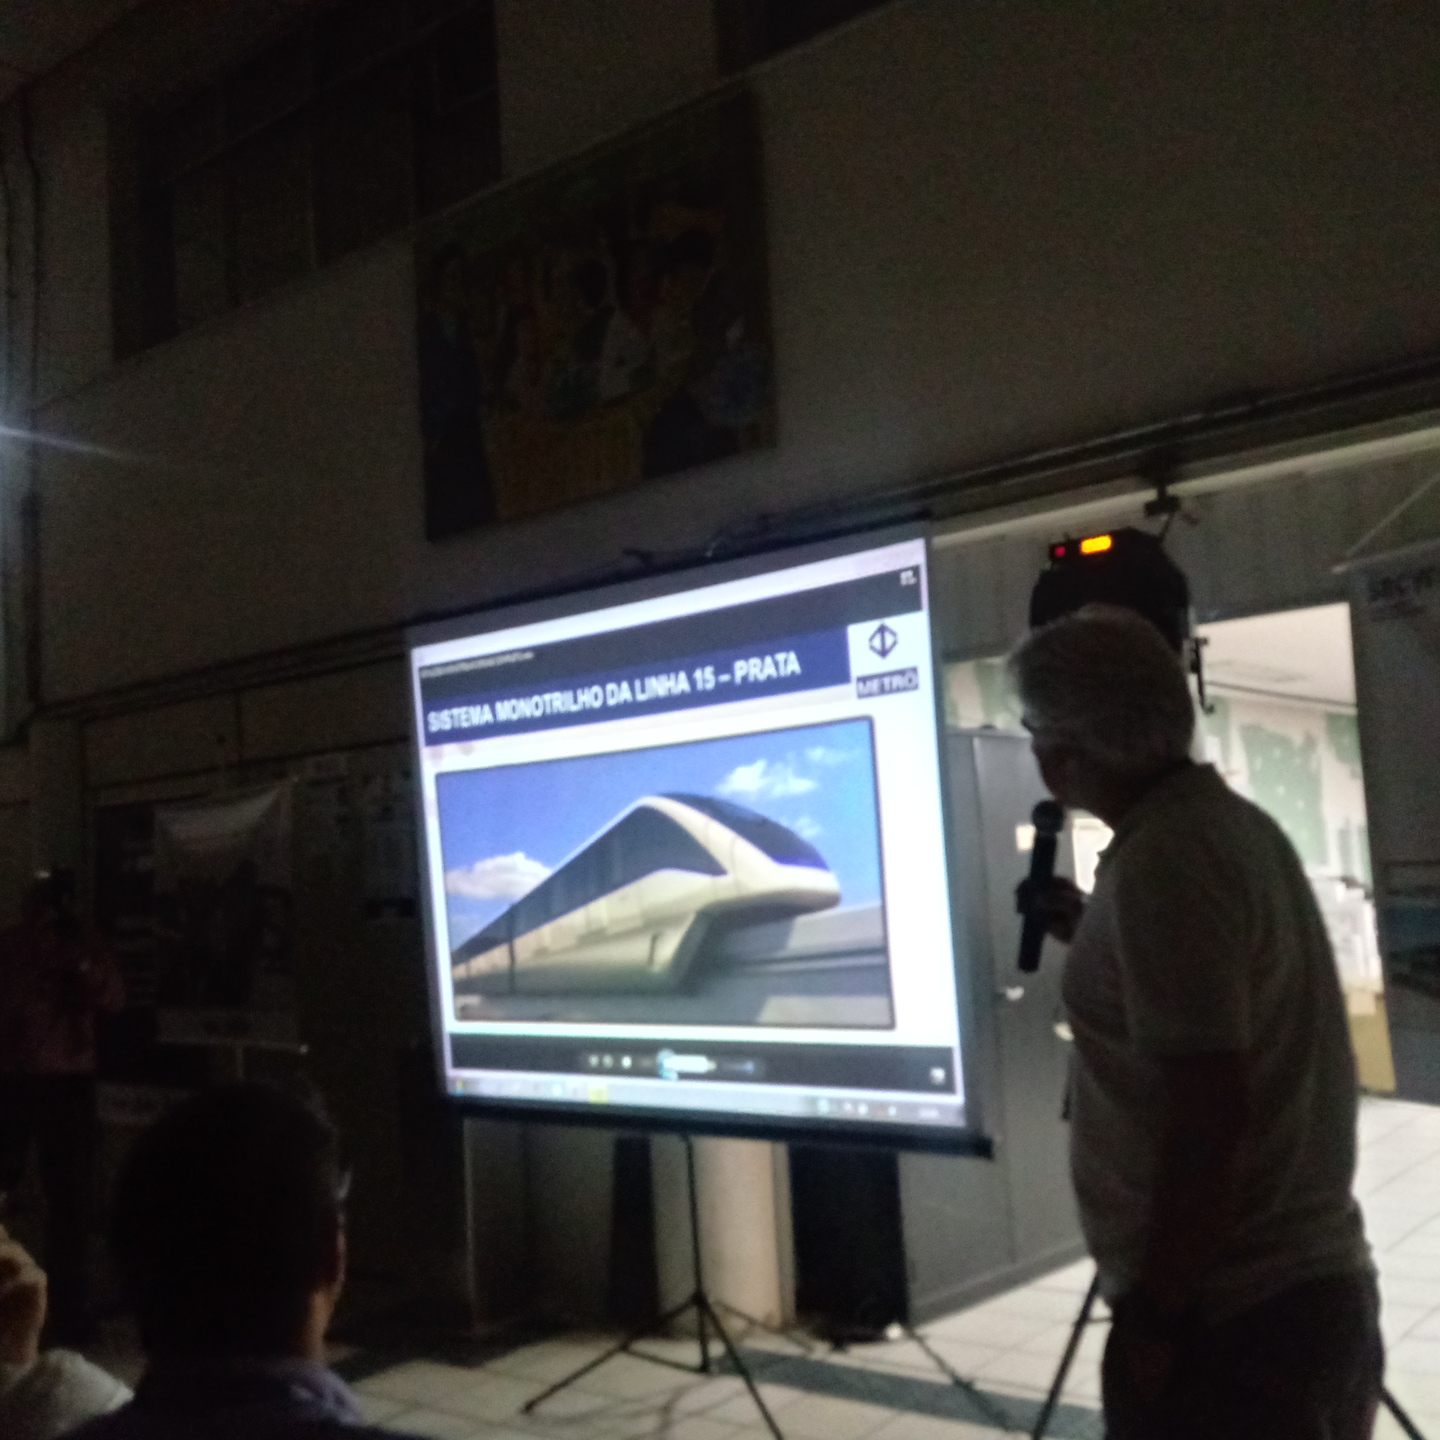 Representante do Metrô faz apresentação com slides sobre as obras do Monotrilho